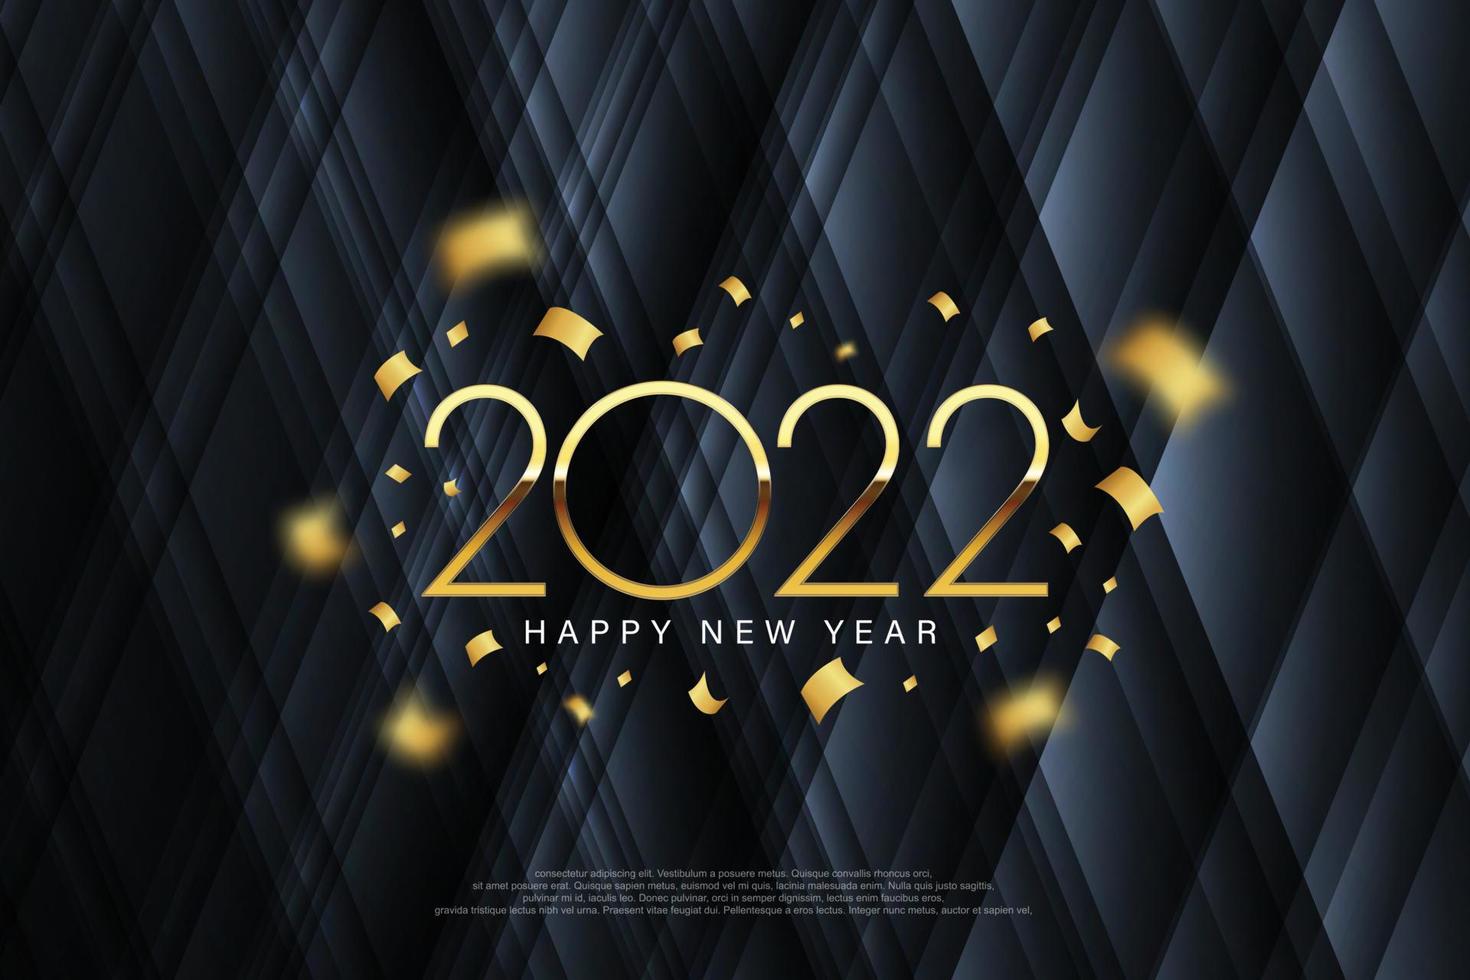 2022 gott nytt år elegant design - vektorillustration av gyllene 2022 logotypnummer på mörkgrå bakgrund - perfekt typografi för 2022 spara datum lyxdesign och nyårsfirande. vektor